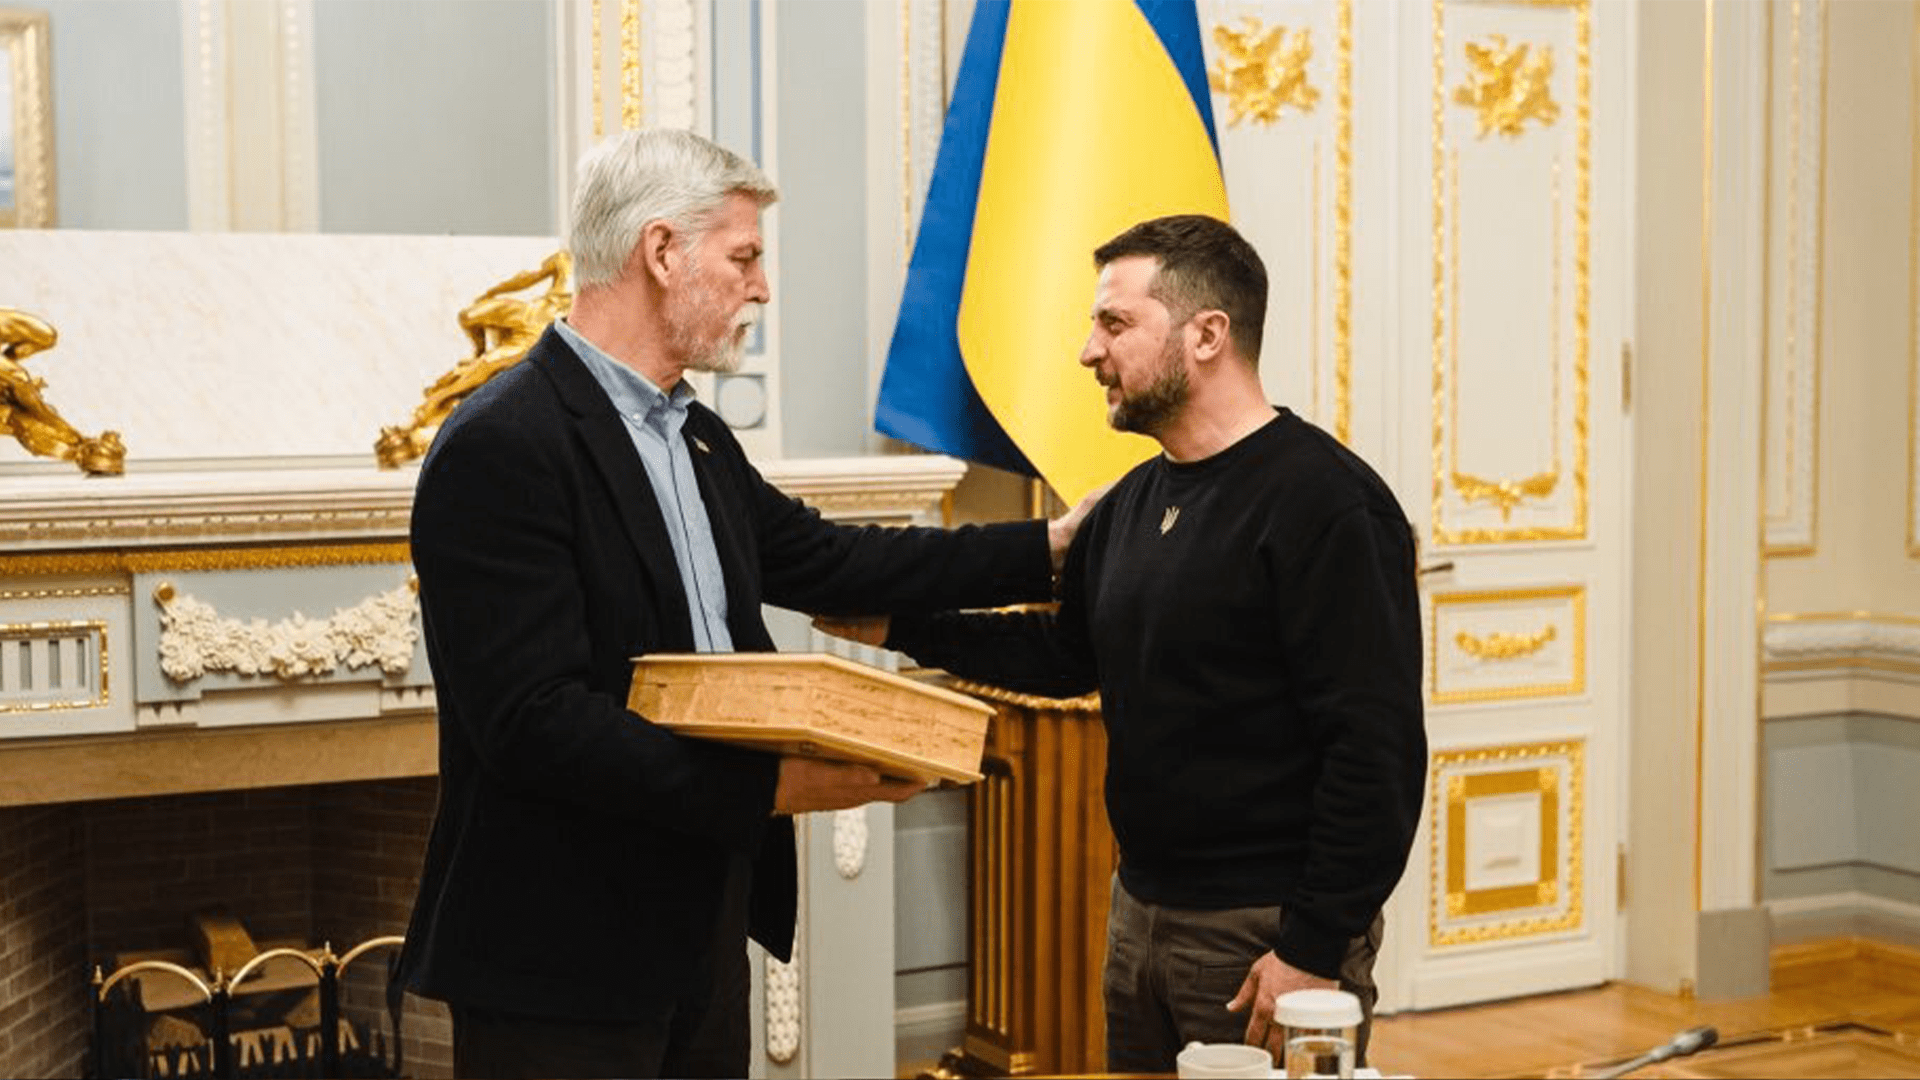 Prezident Pavel předal Zelenskému během dubnové návštěvy Ukrajiny pistoli.